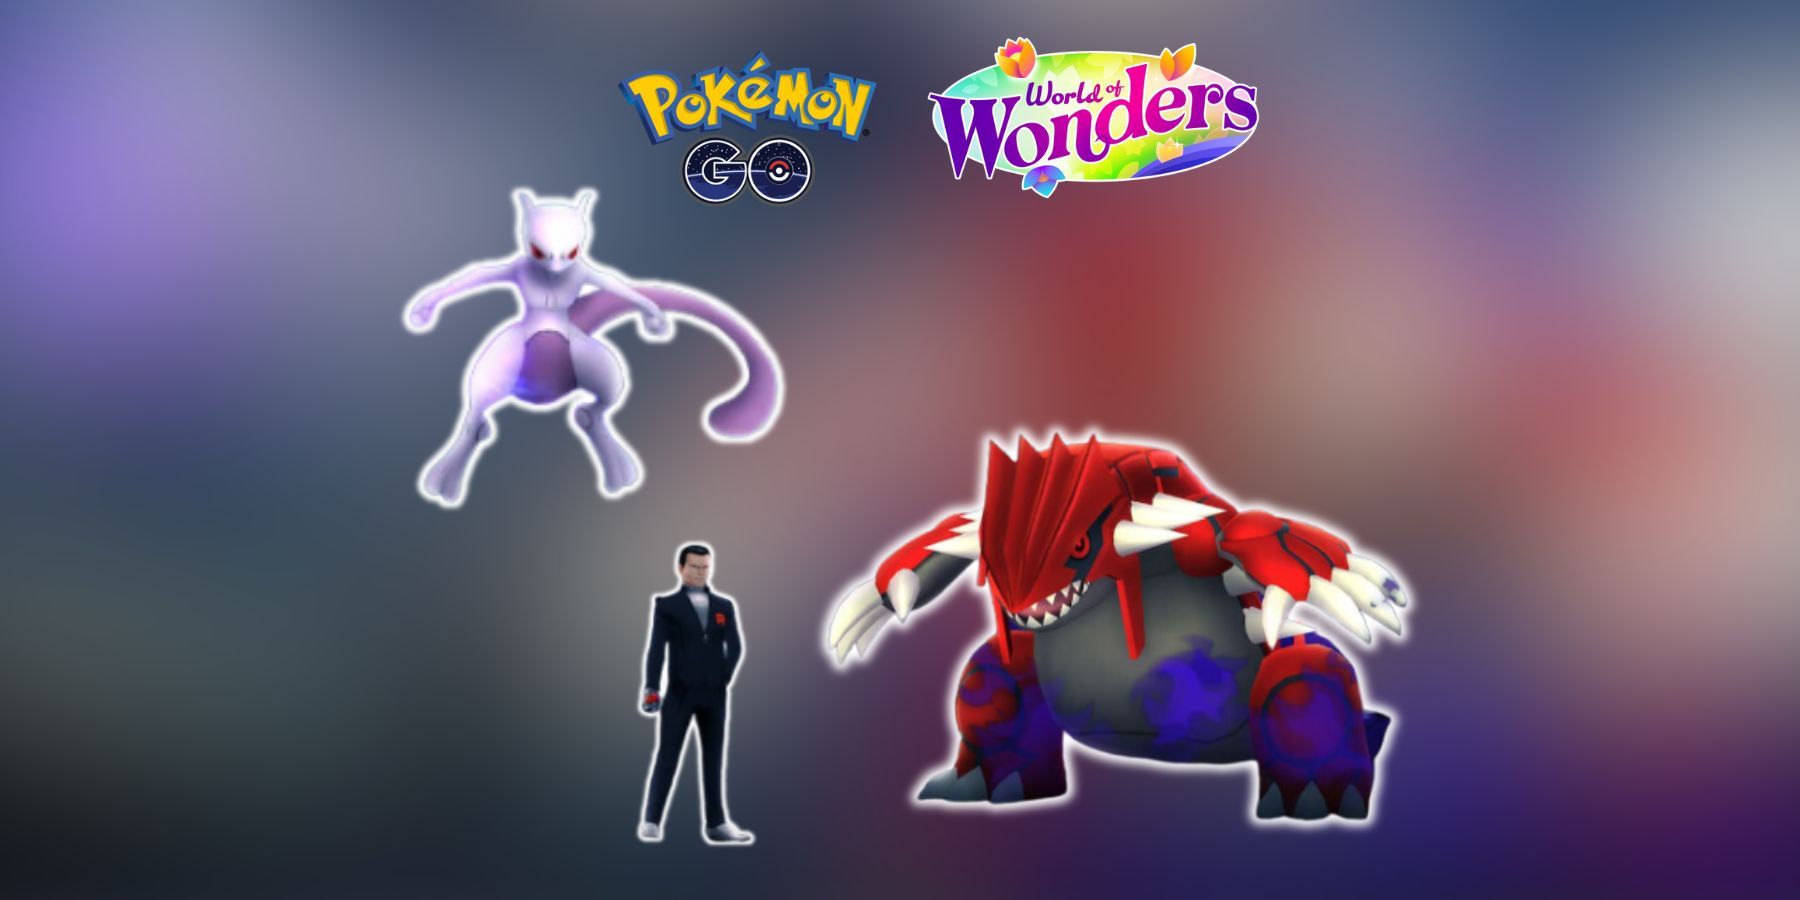 Pokemon GO World of Wonders Taken Over Field Research